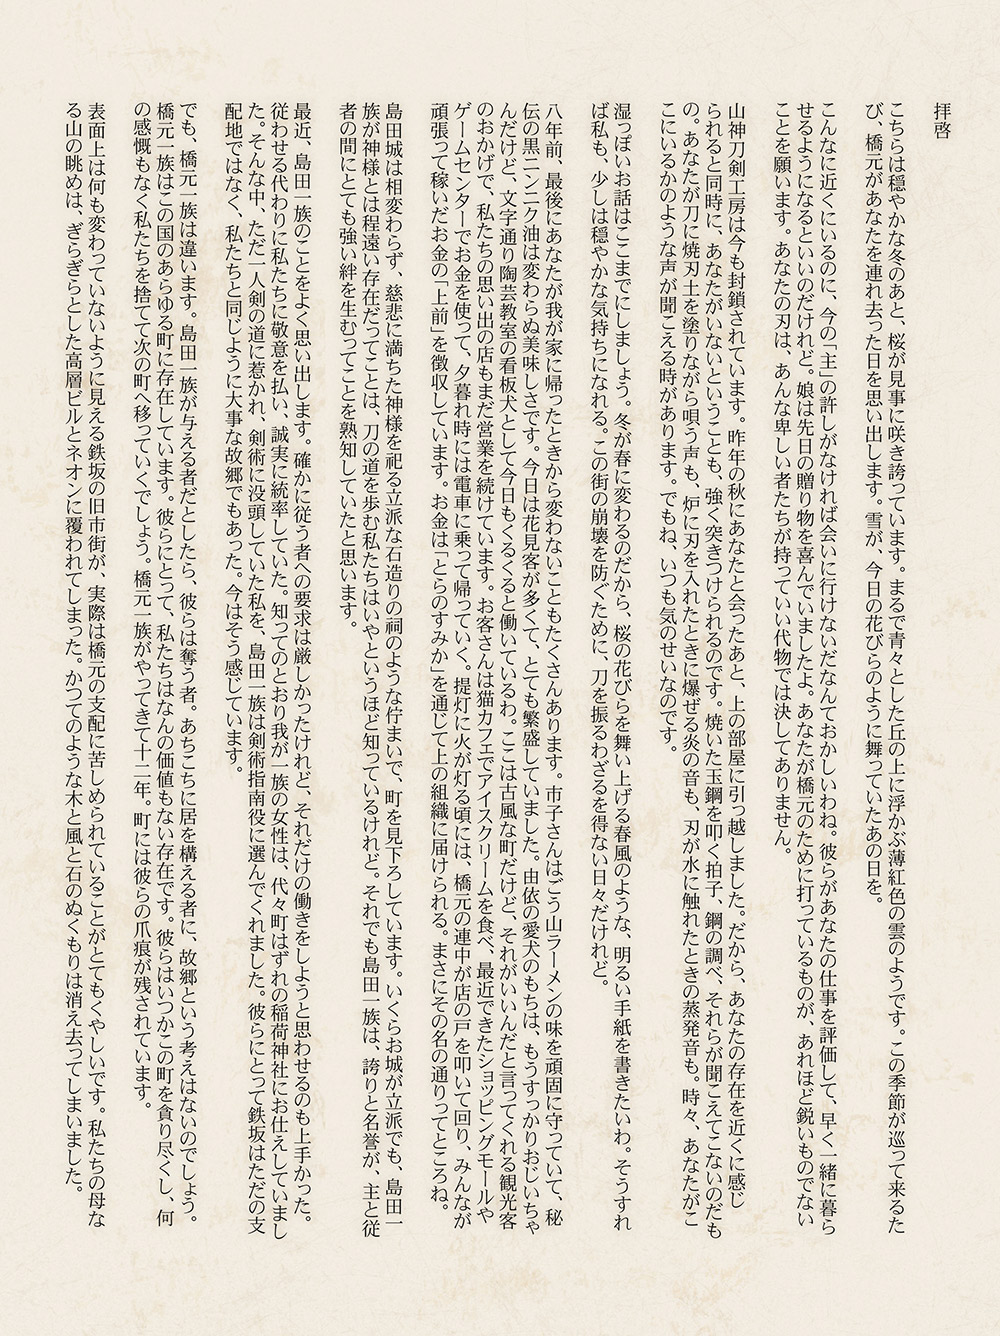 铁坂地图上线时，官方预热的山神朝写给山神敏郎的一封信